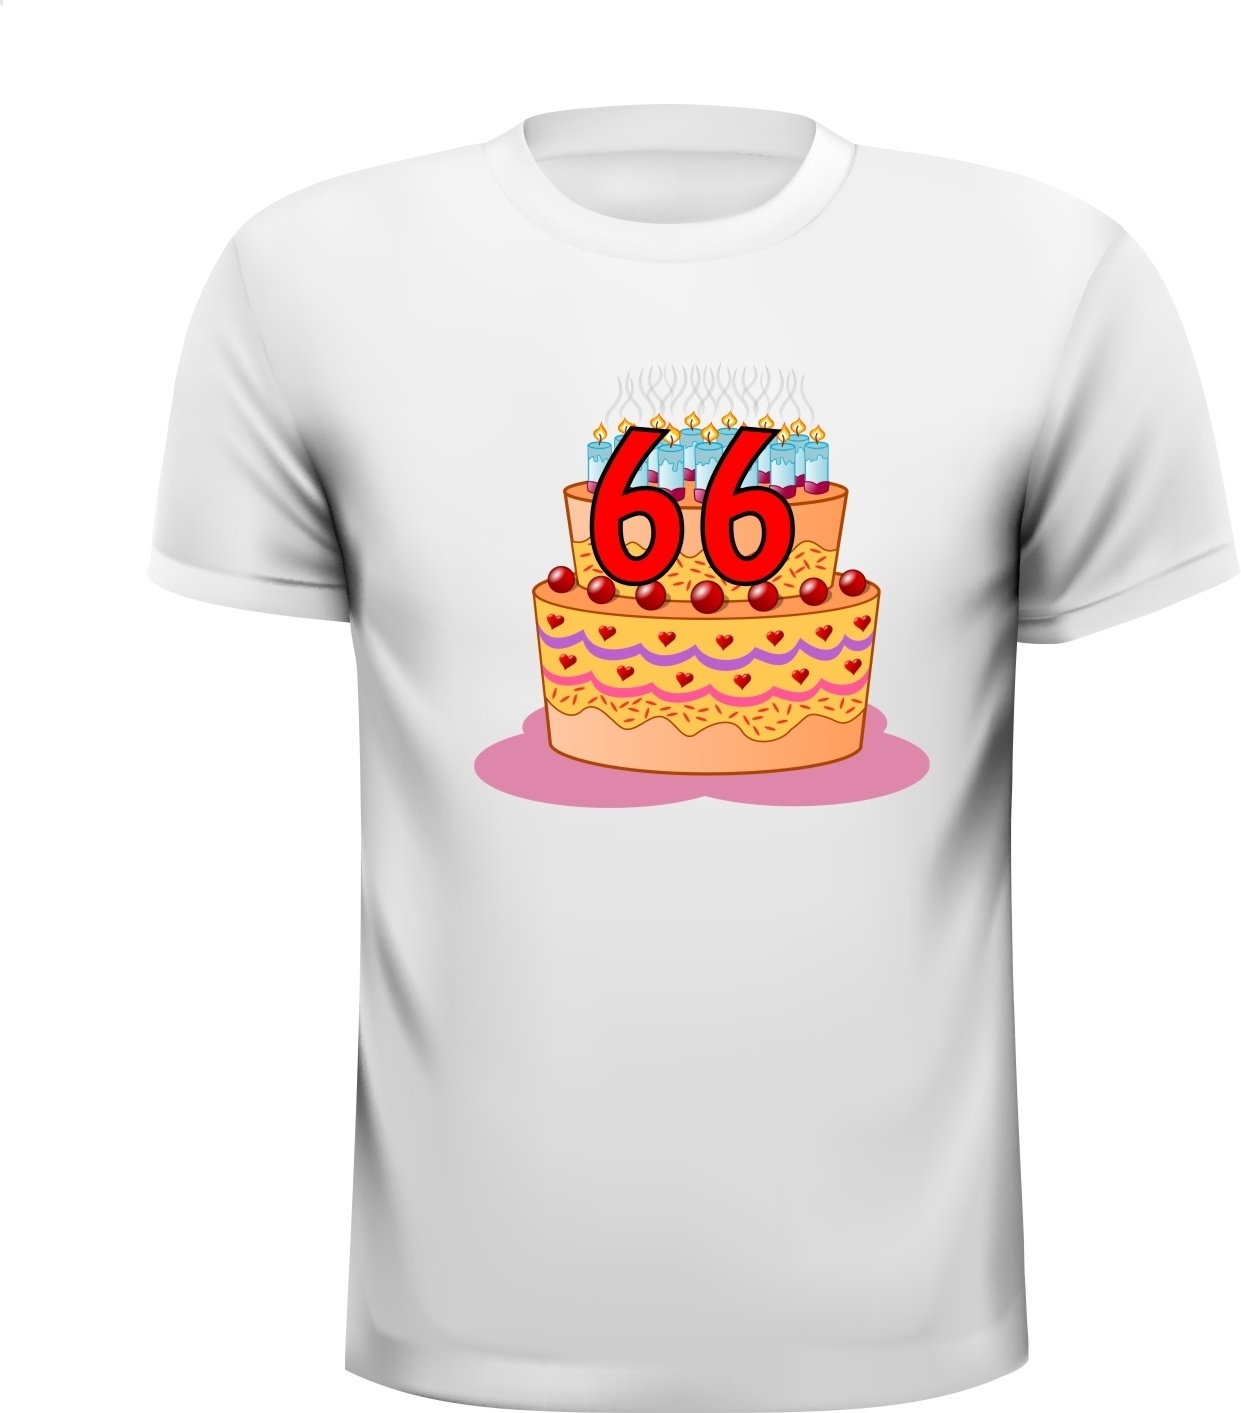 Leuk verjaardag fun shirt 66 jaar 